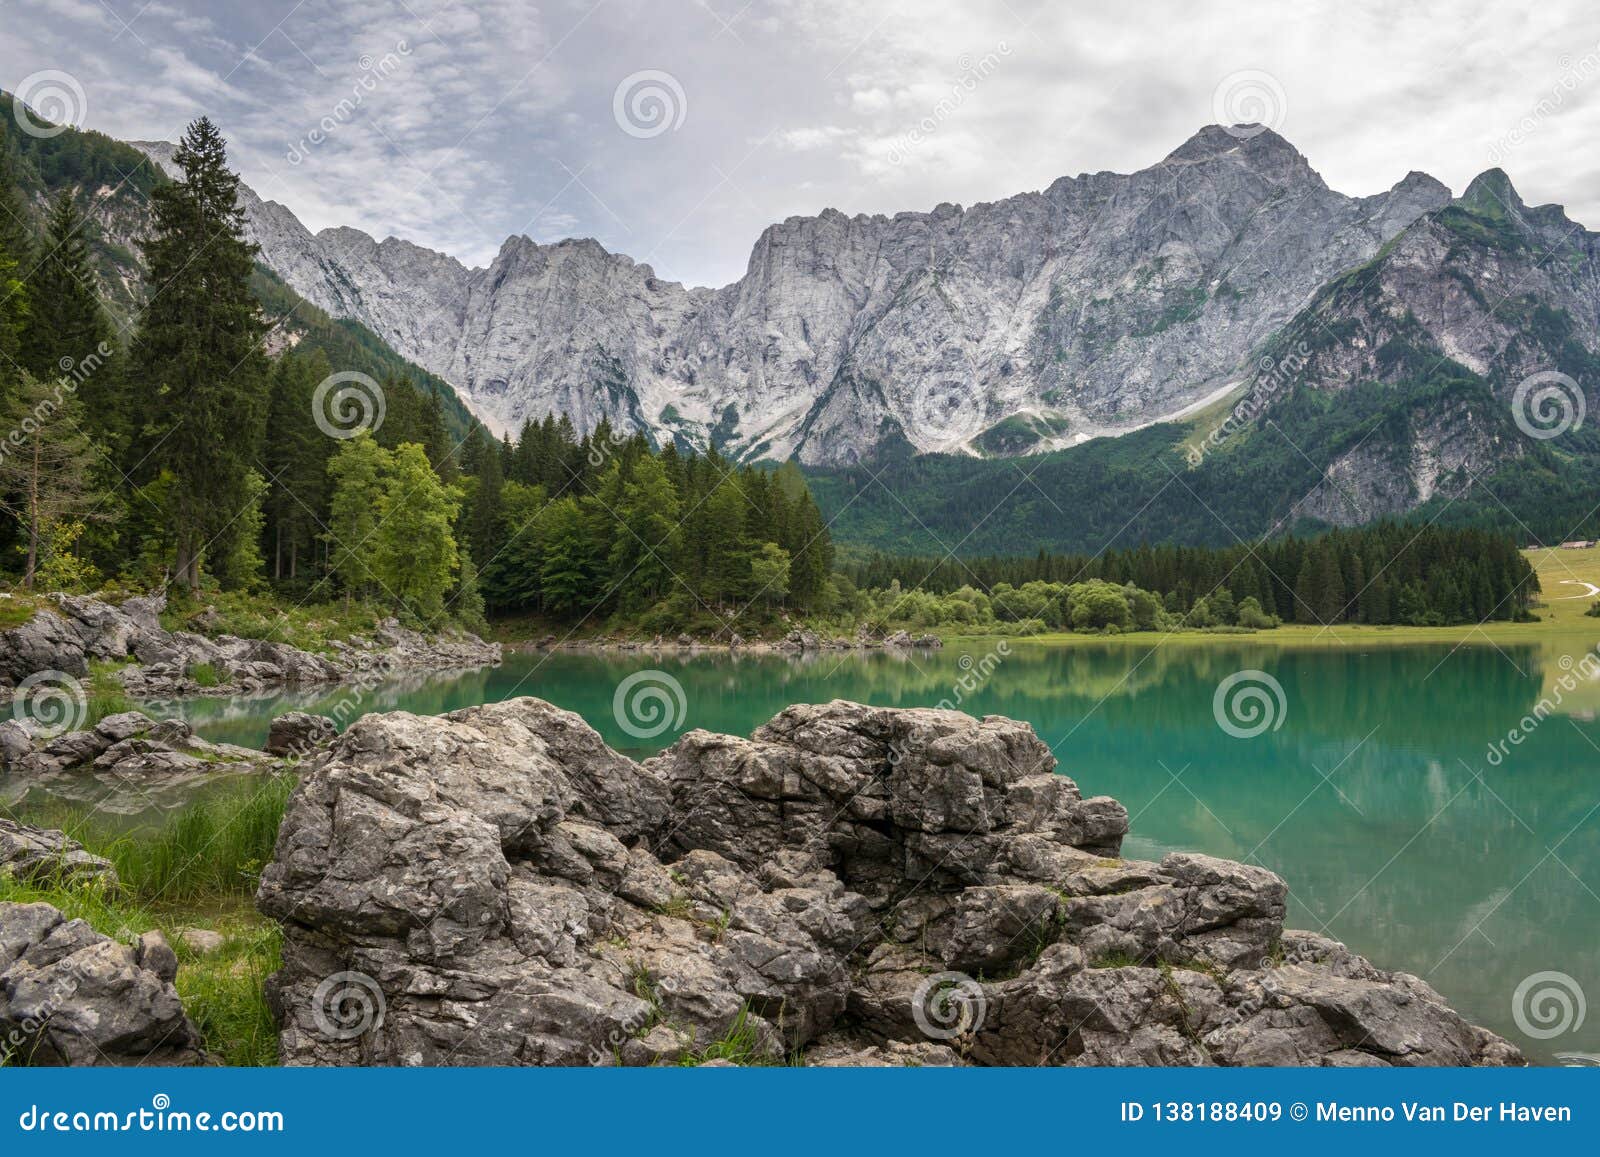 Lac Superieur Fusine En Italie Du Nord Est Avec La Belle Couleur De Turquoise De L Eau Image Stock Image Du Turquoise Italie